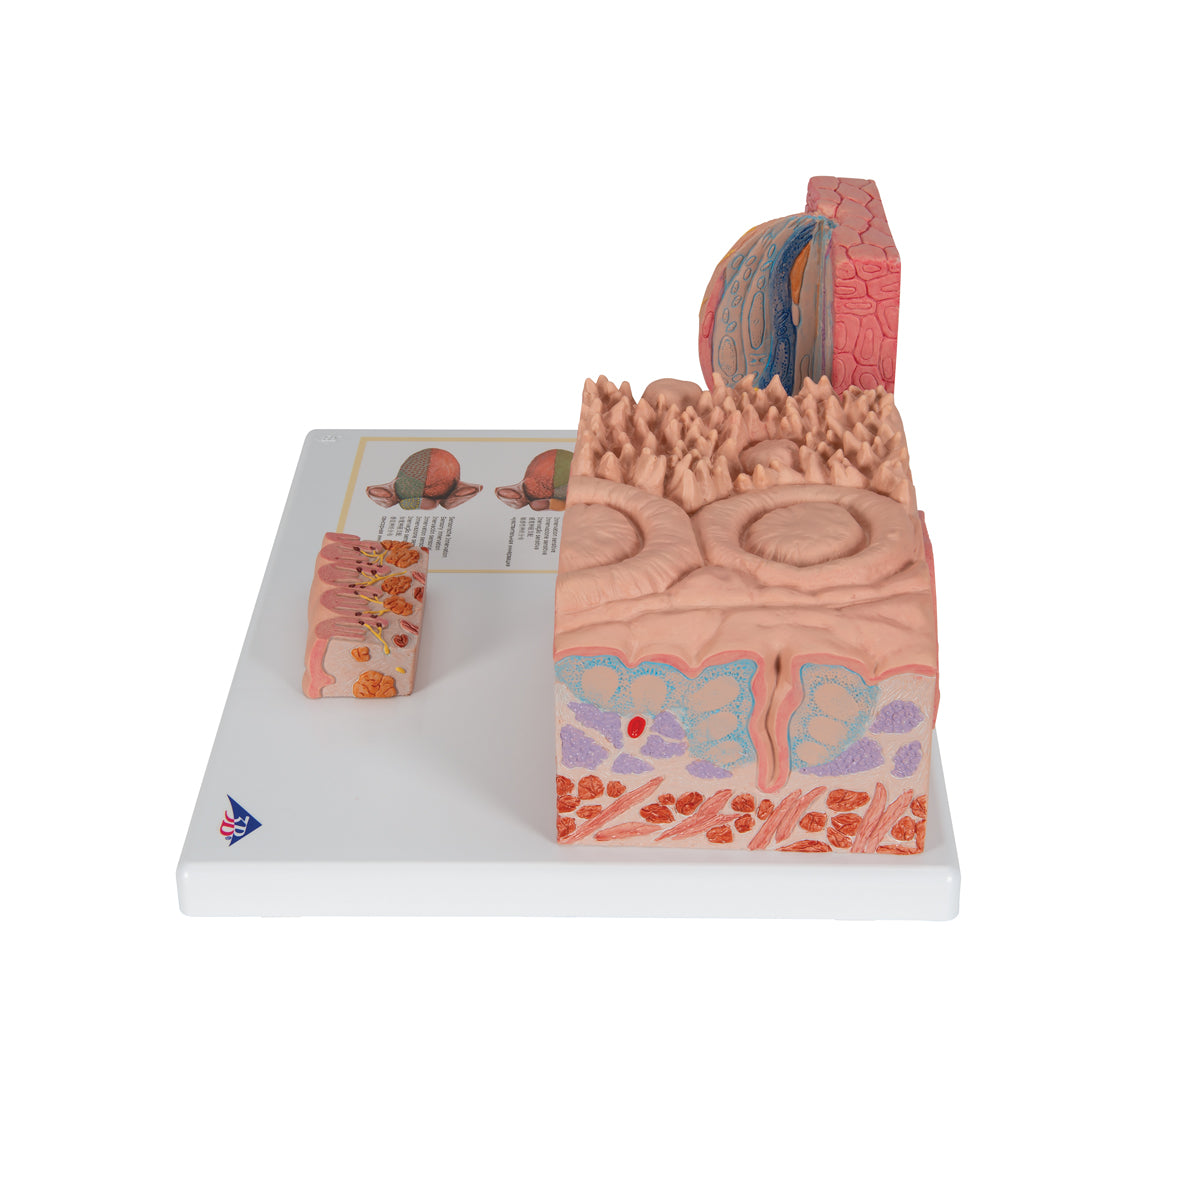 Detaljerad modell av tungans olika vävnader i ett mikroskopiskt perspektiv